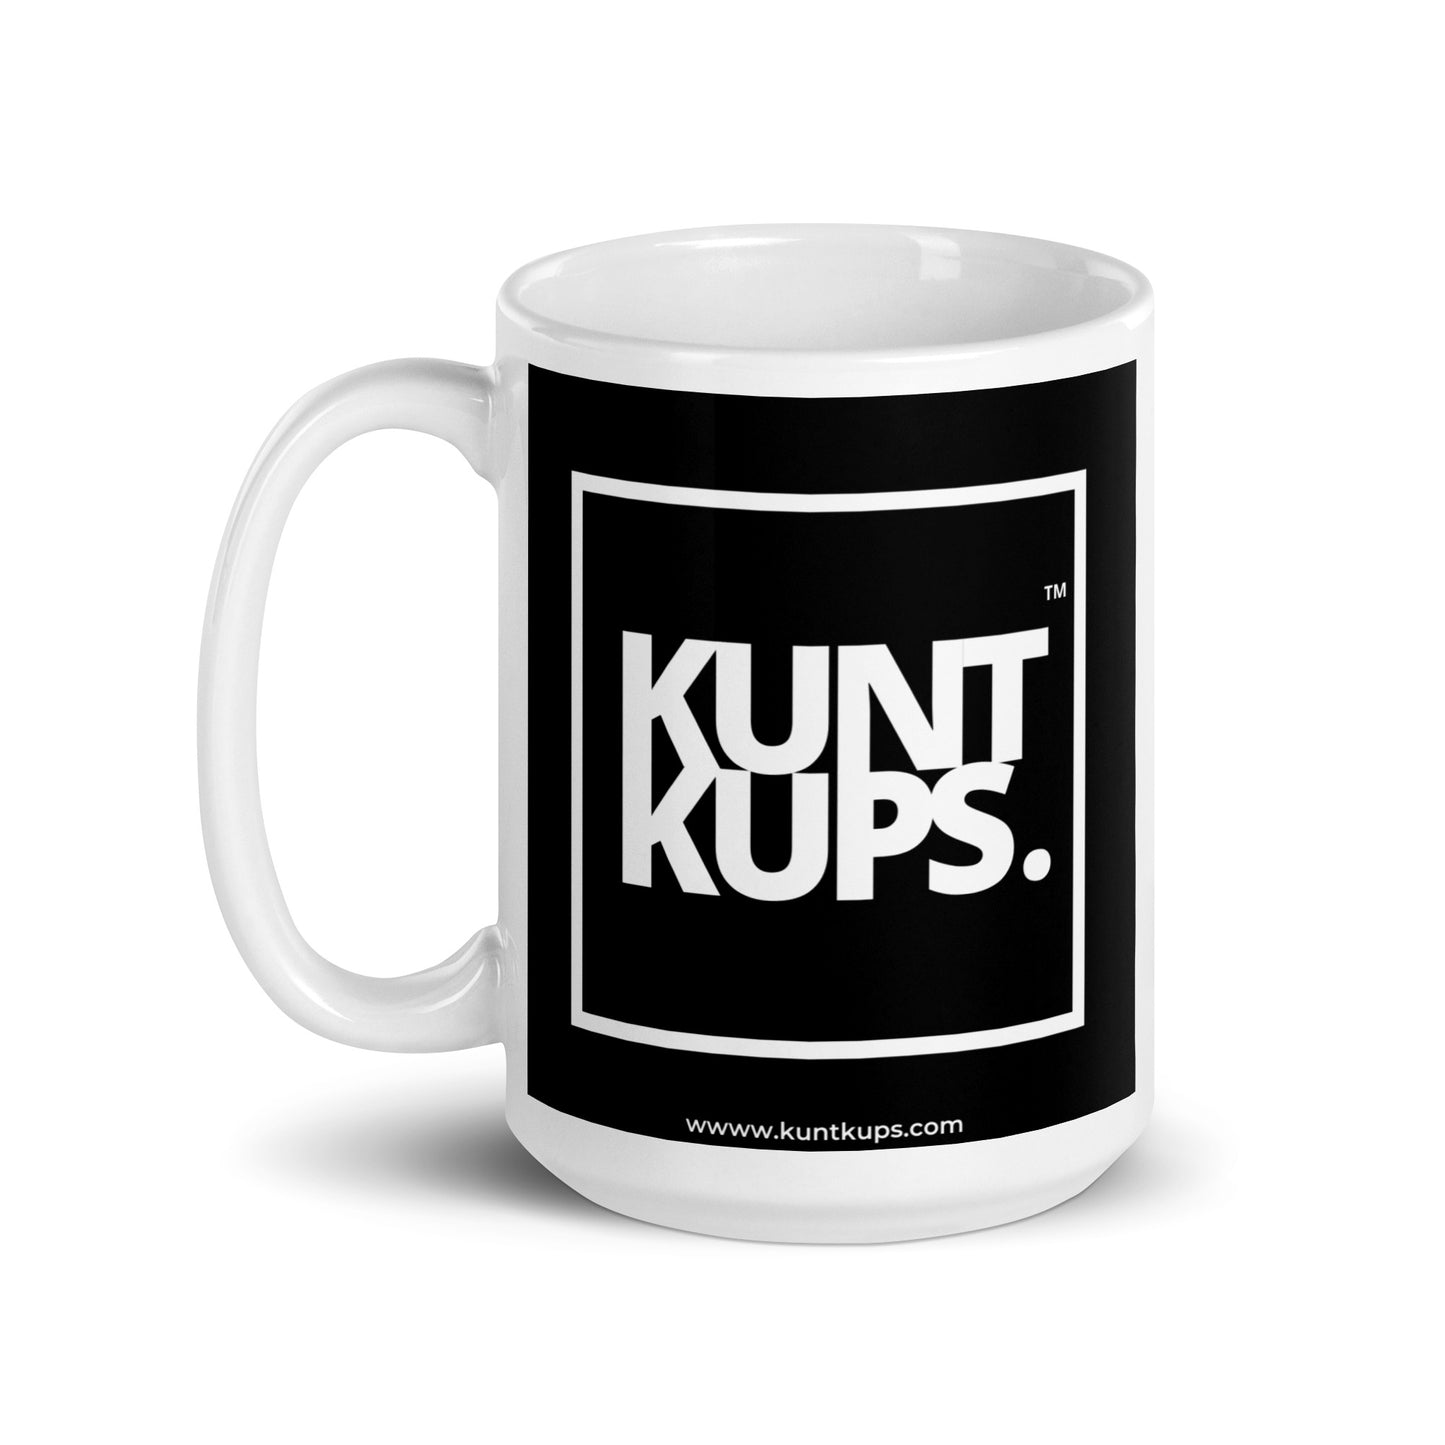 KUNT KUPS - The OG!